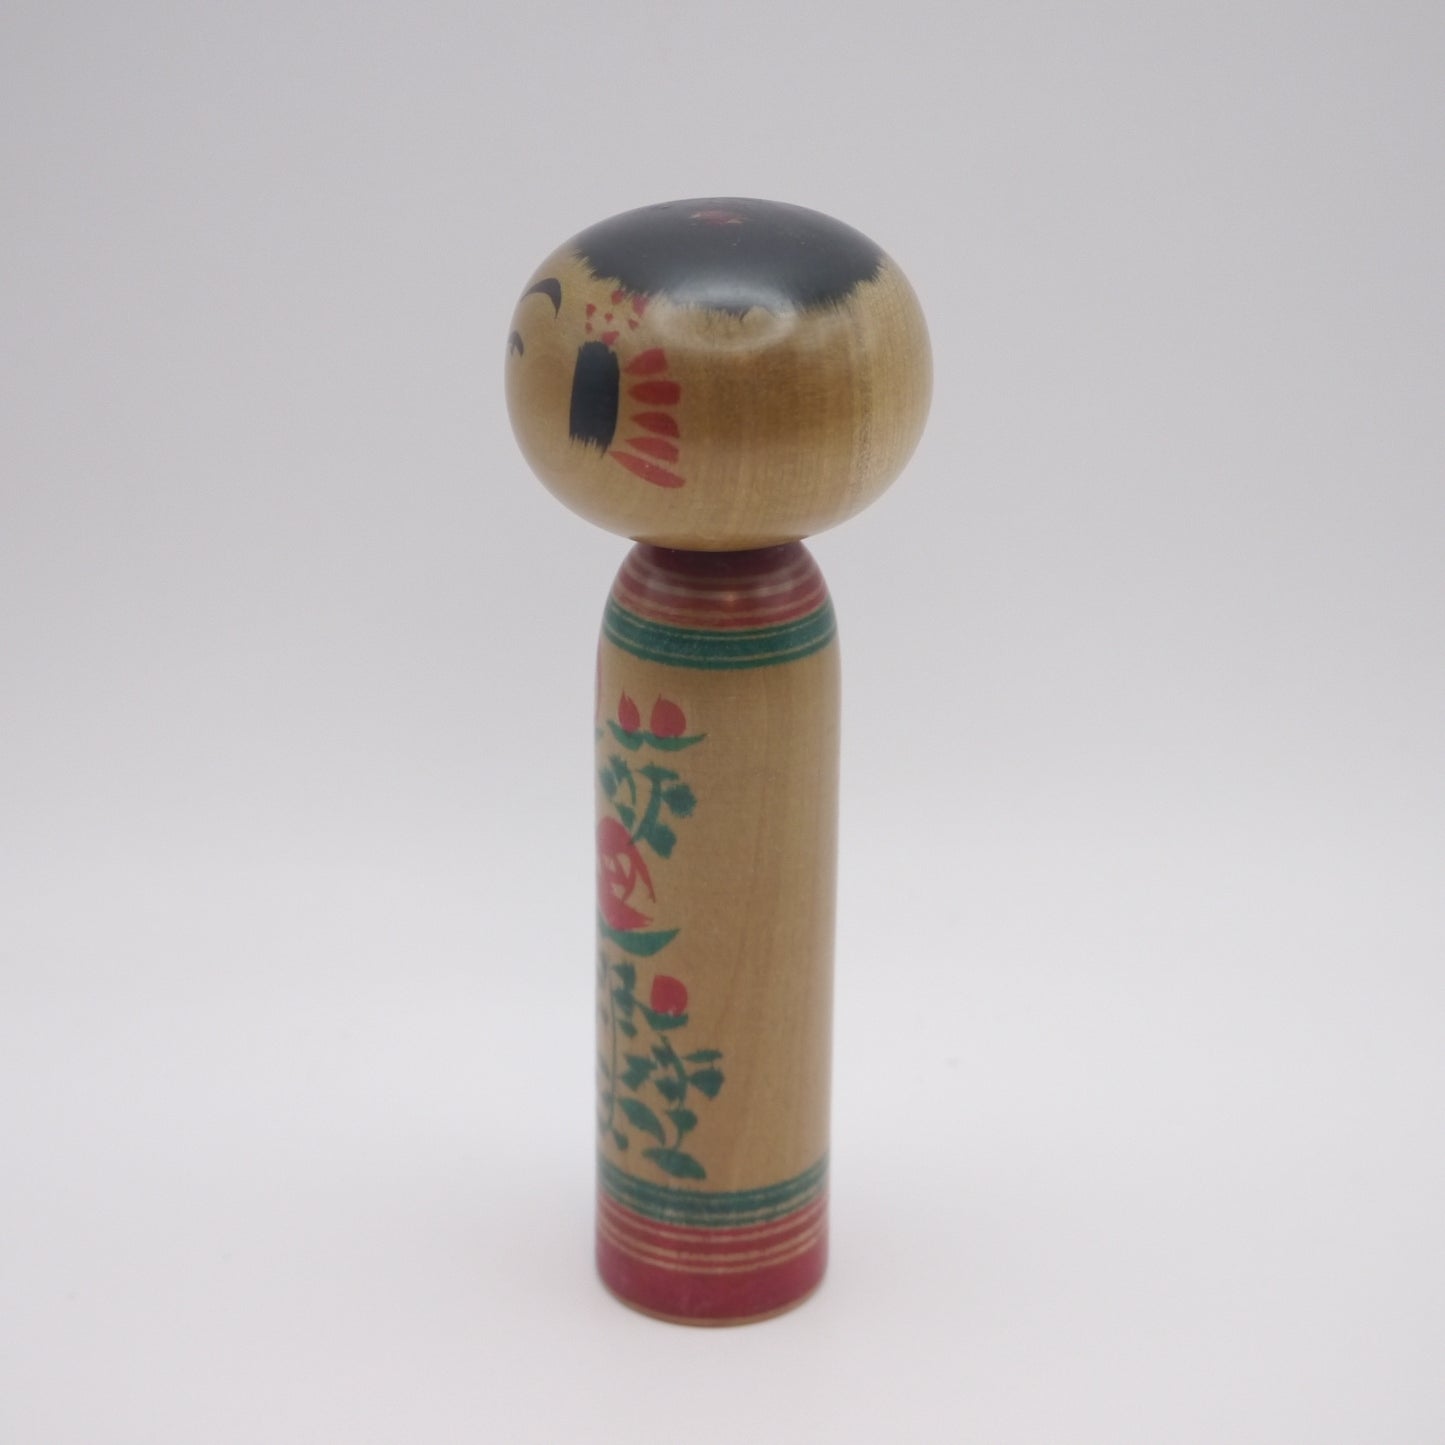 Kawaii Kokeshi doll by Hiroshi Mito